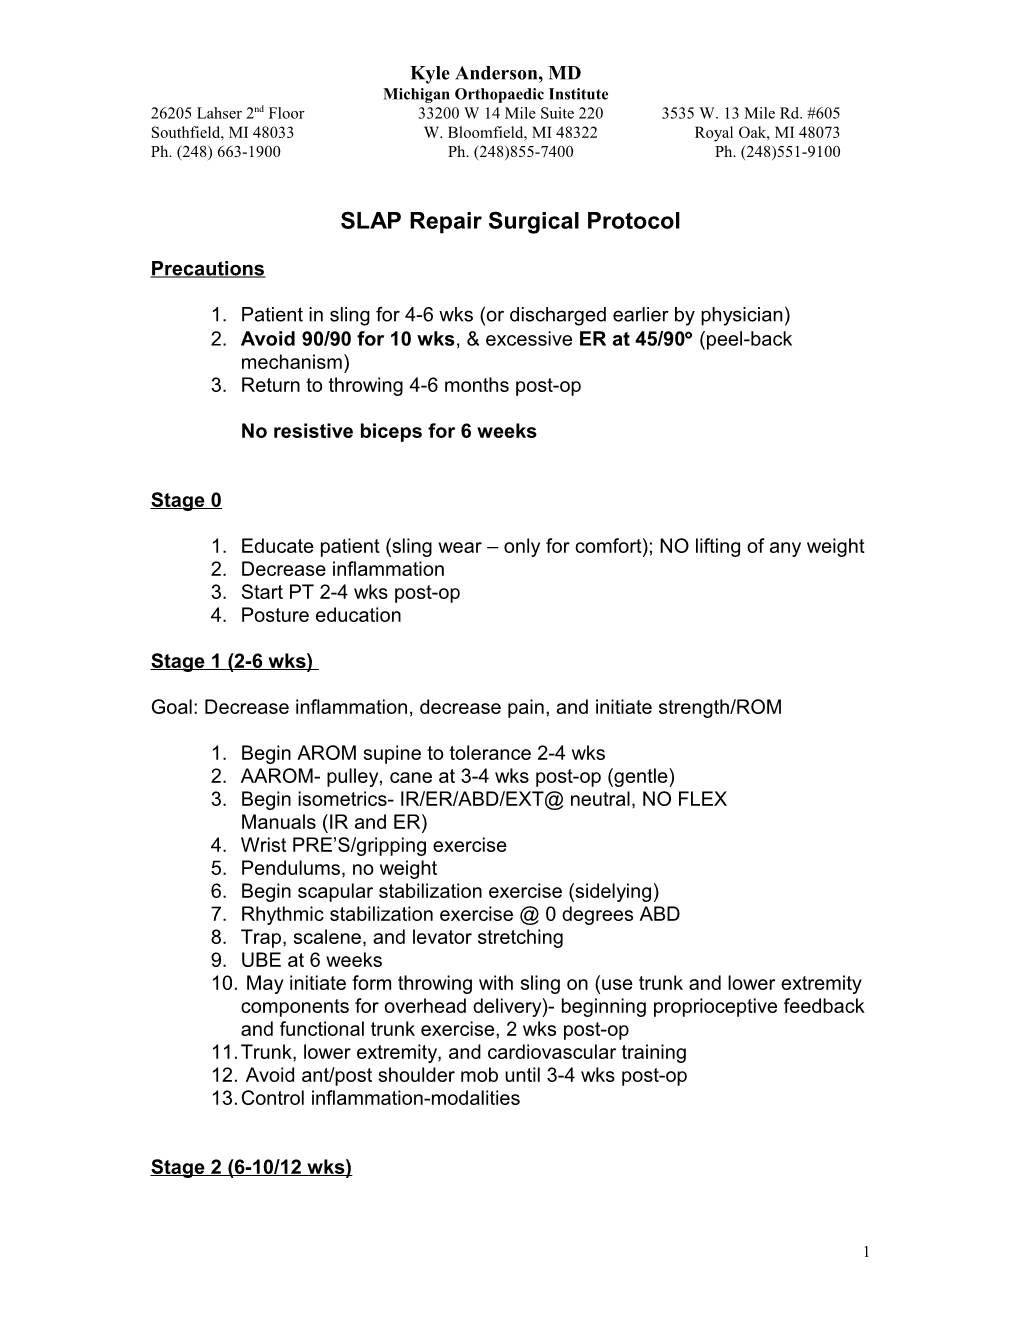 SLAP Repair Surgical Protocol